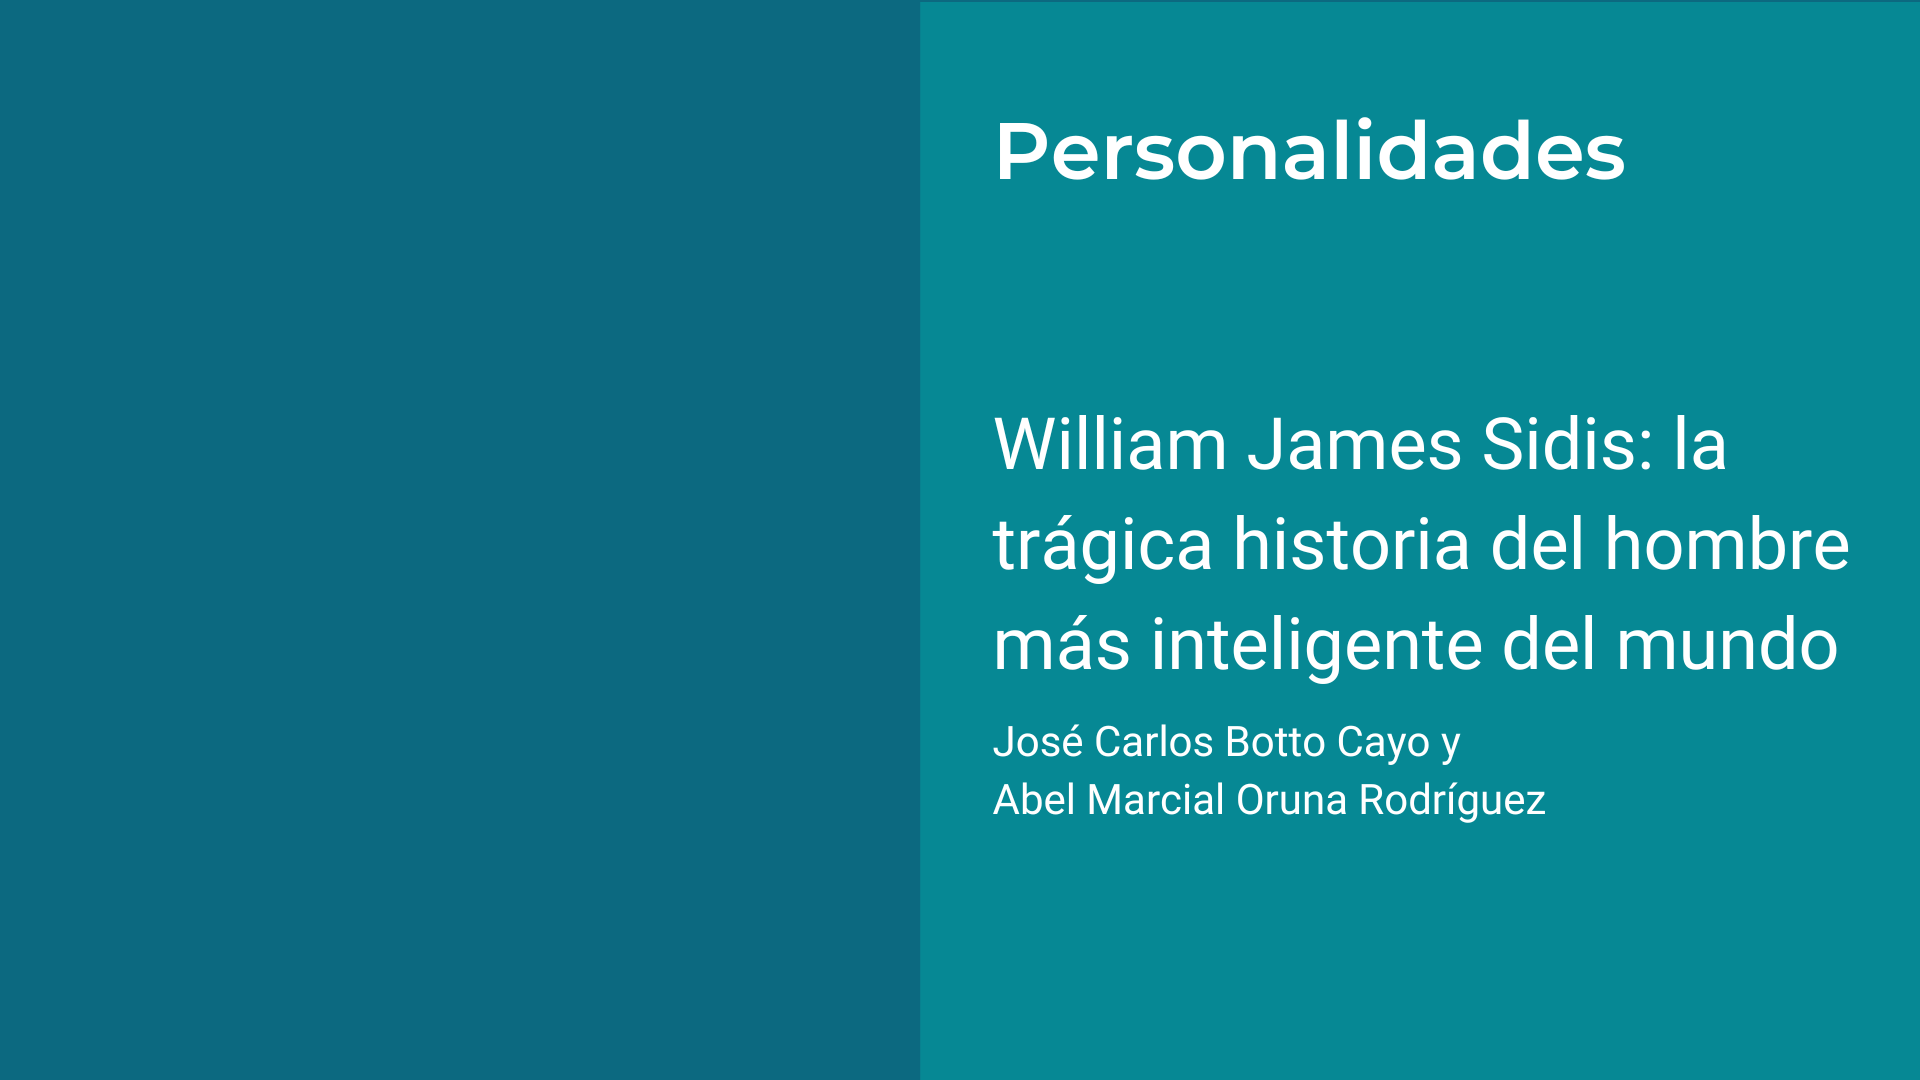 William James Sidis, la historia del hombre más inteligente de la